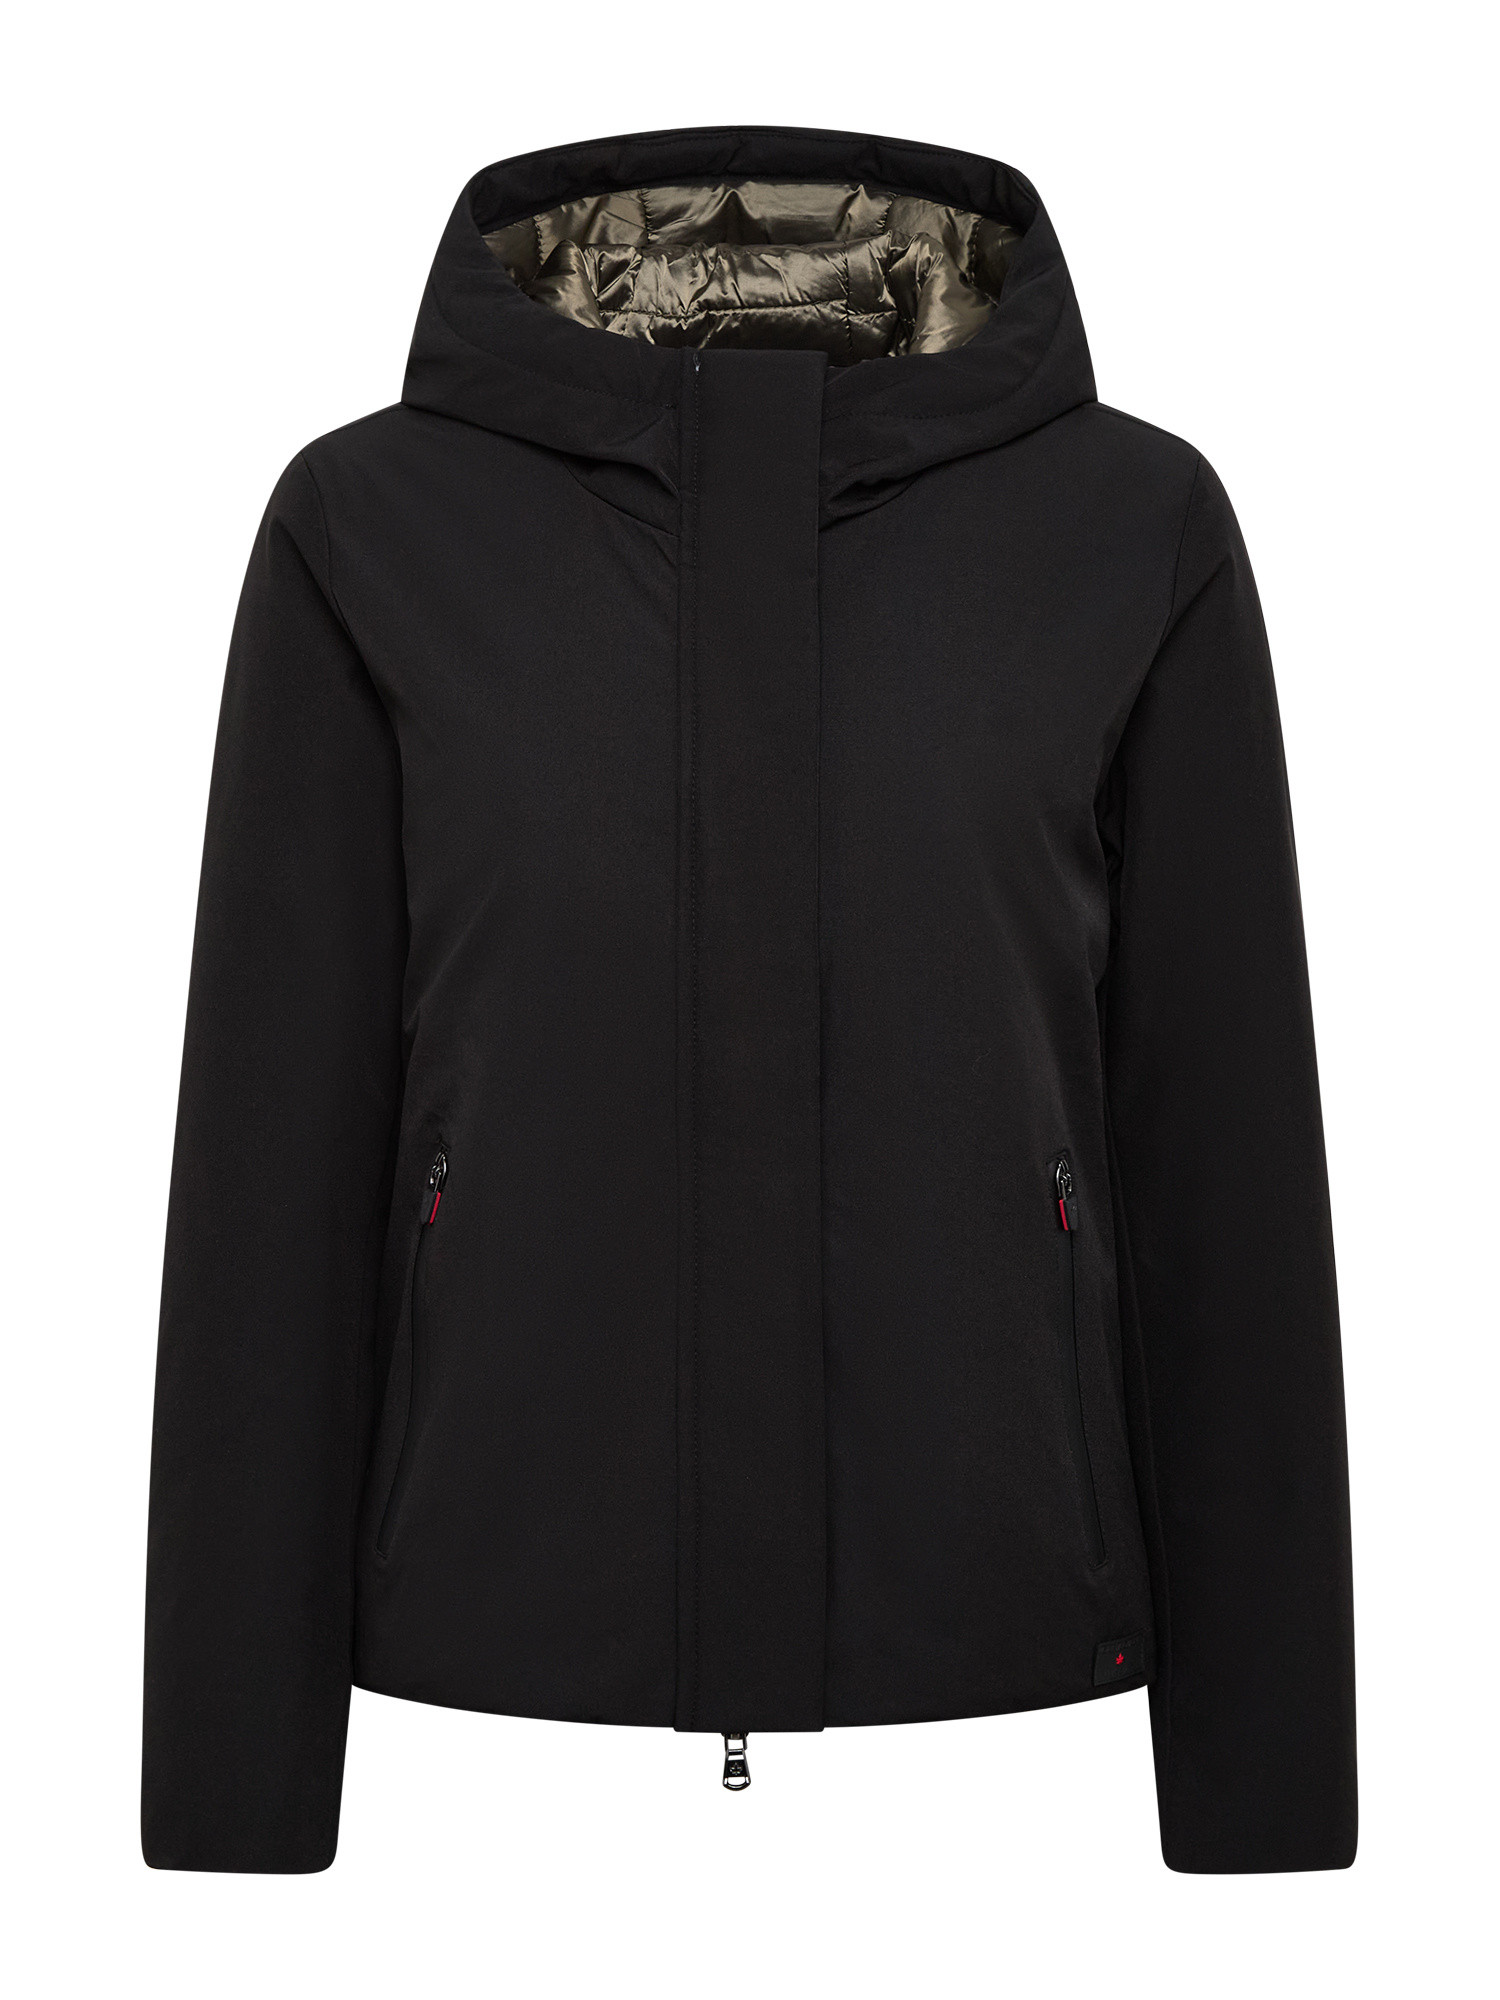 Canadian - Soft zip Jacket, Black, large image number 0